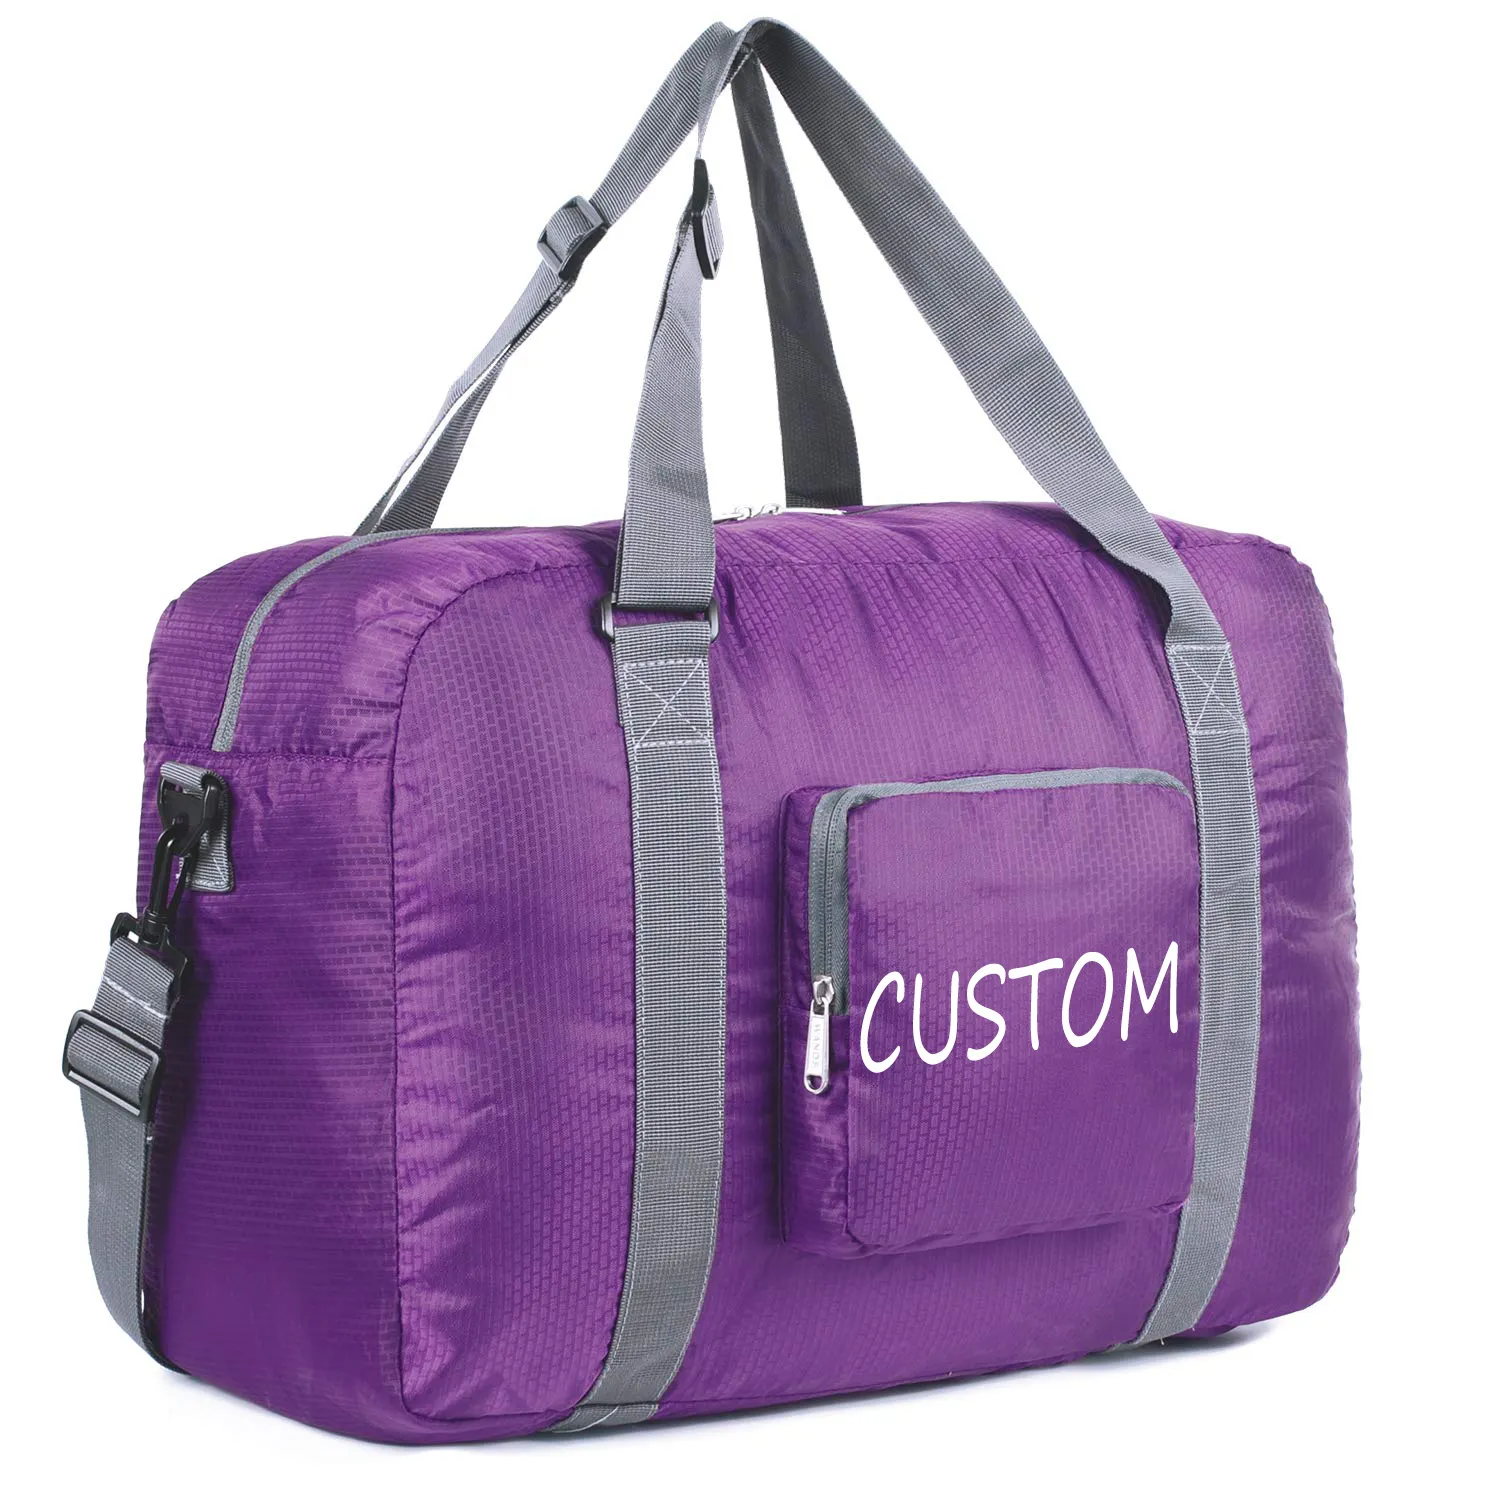 Nouveau design de sac de cabine pliable de 18 pouces pour femmes et filles, sac de voyage pliable personnalisé pour le week-end